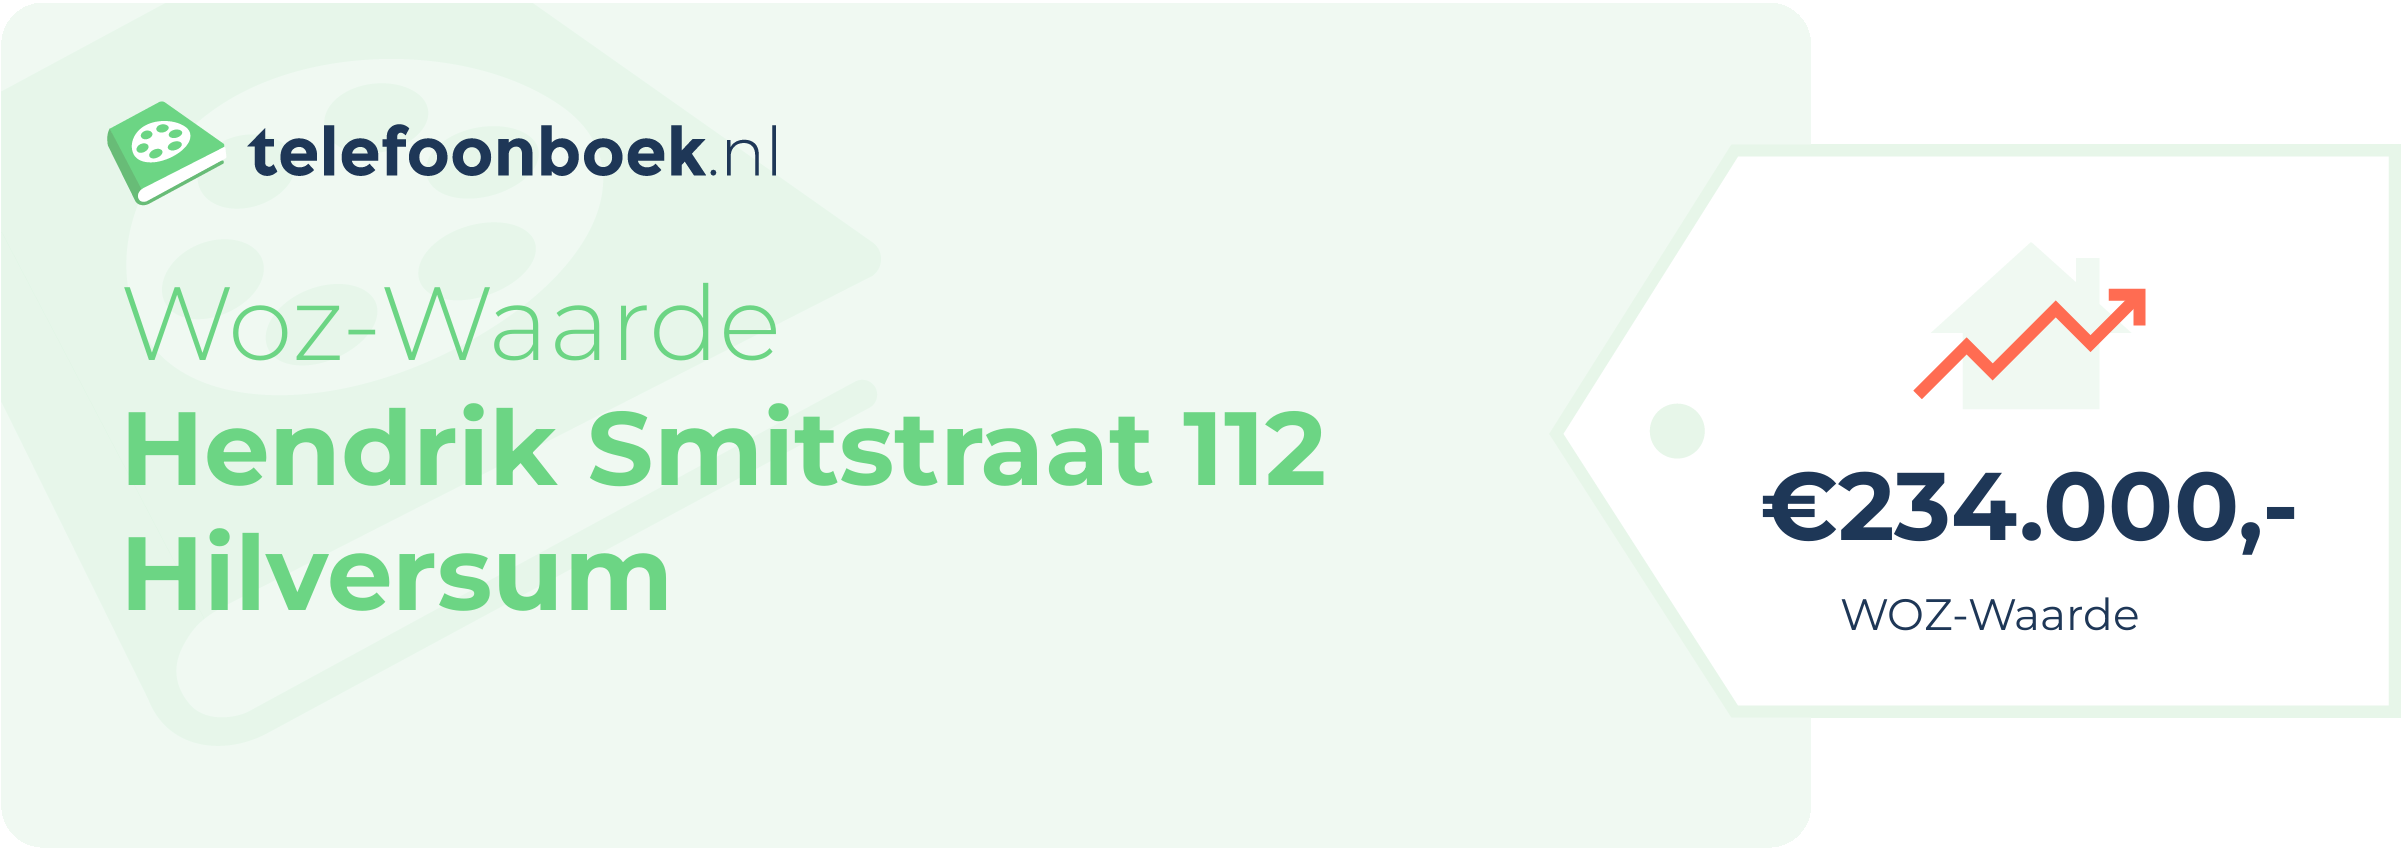 WOZ-waarde Hendrik Smitstraat 112 Hilversum